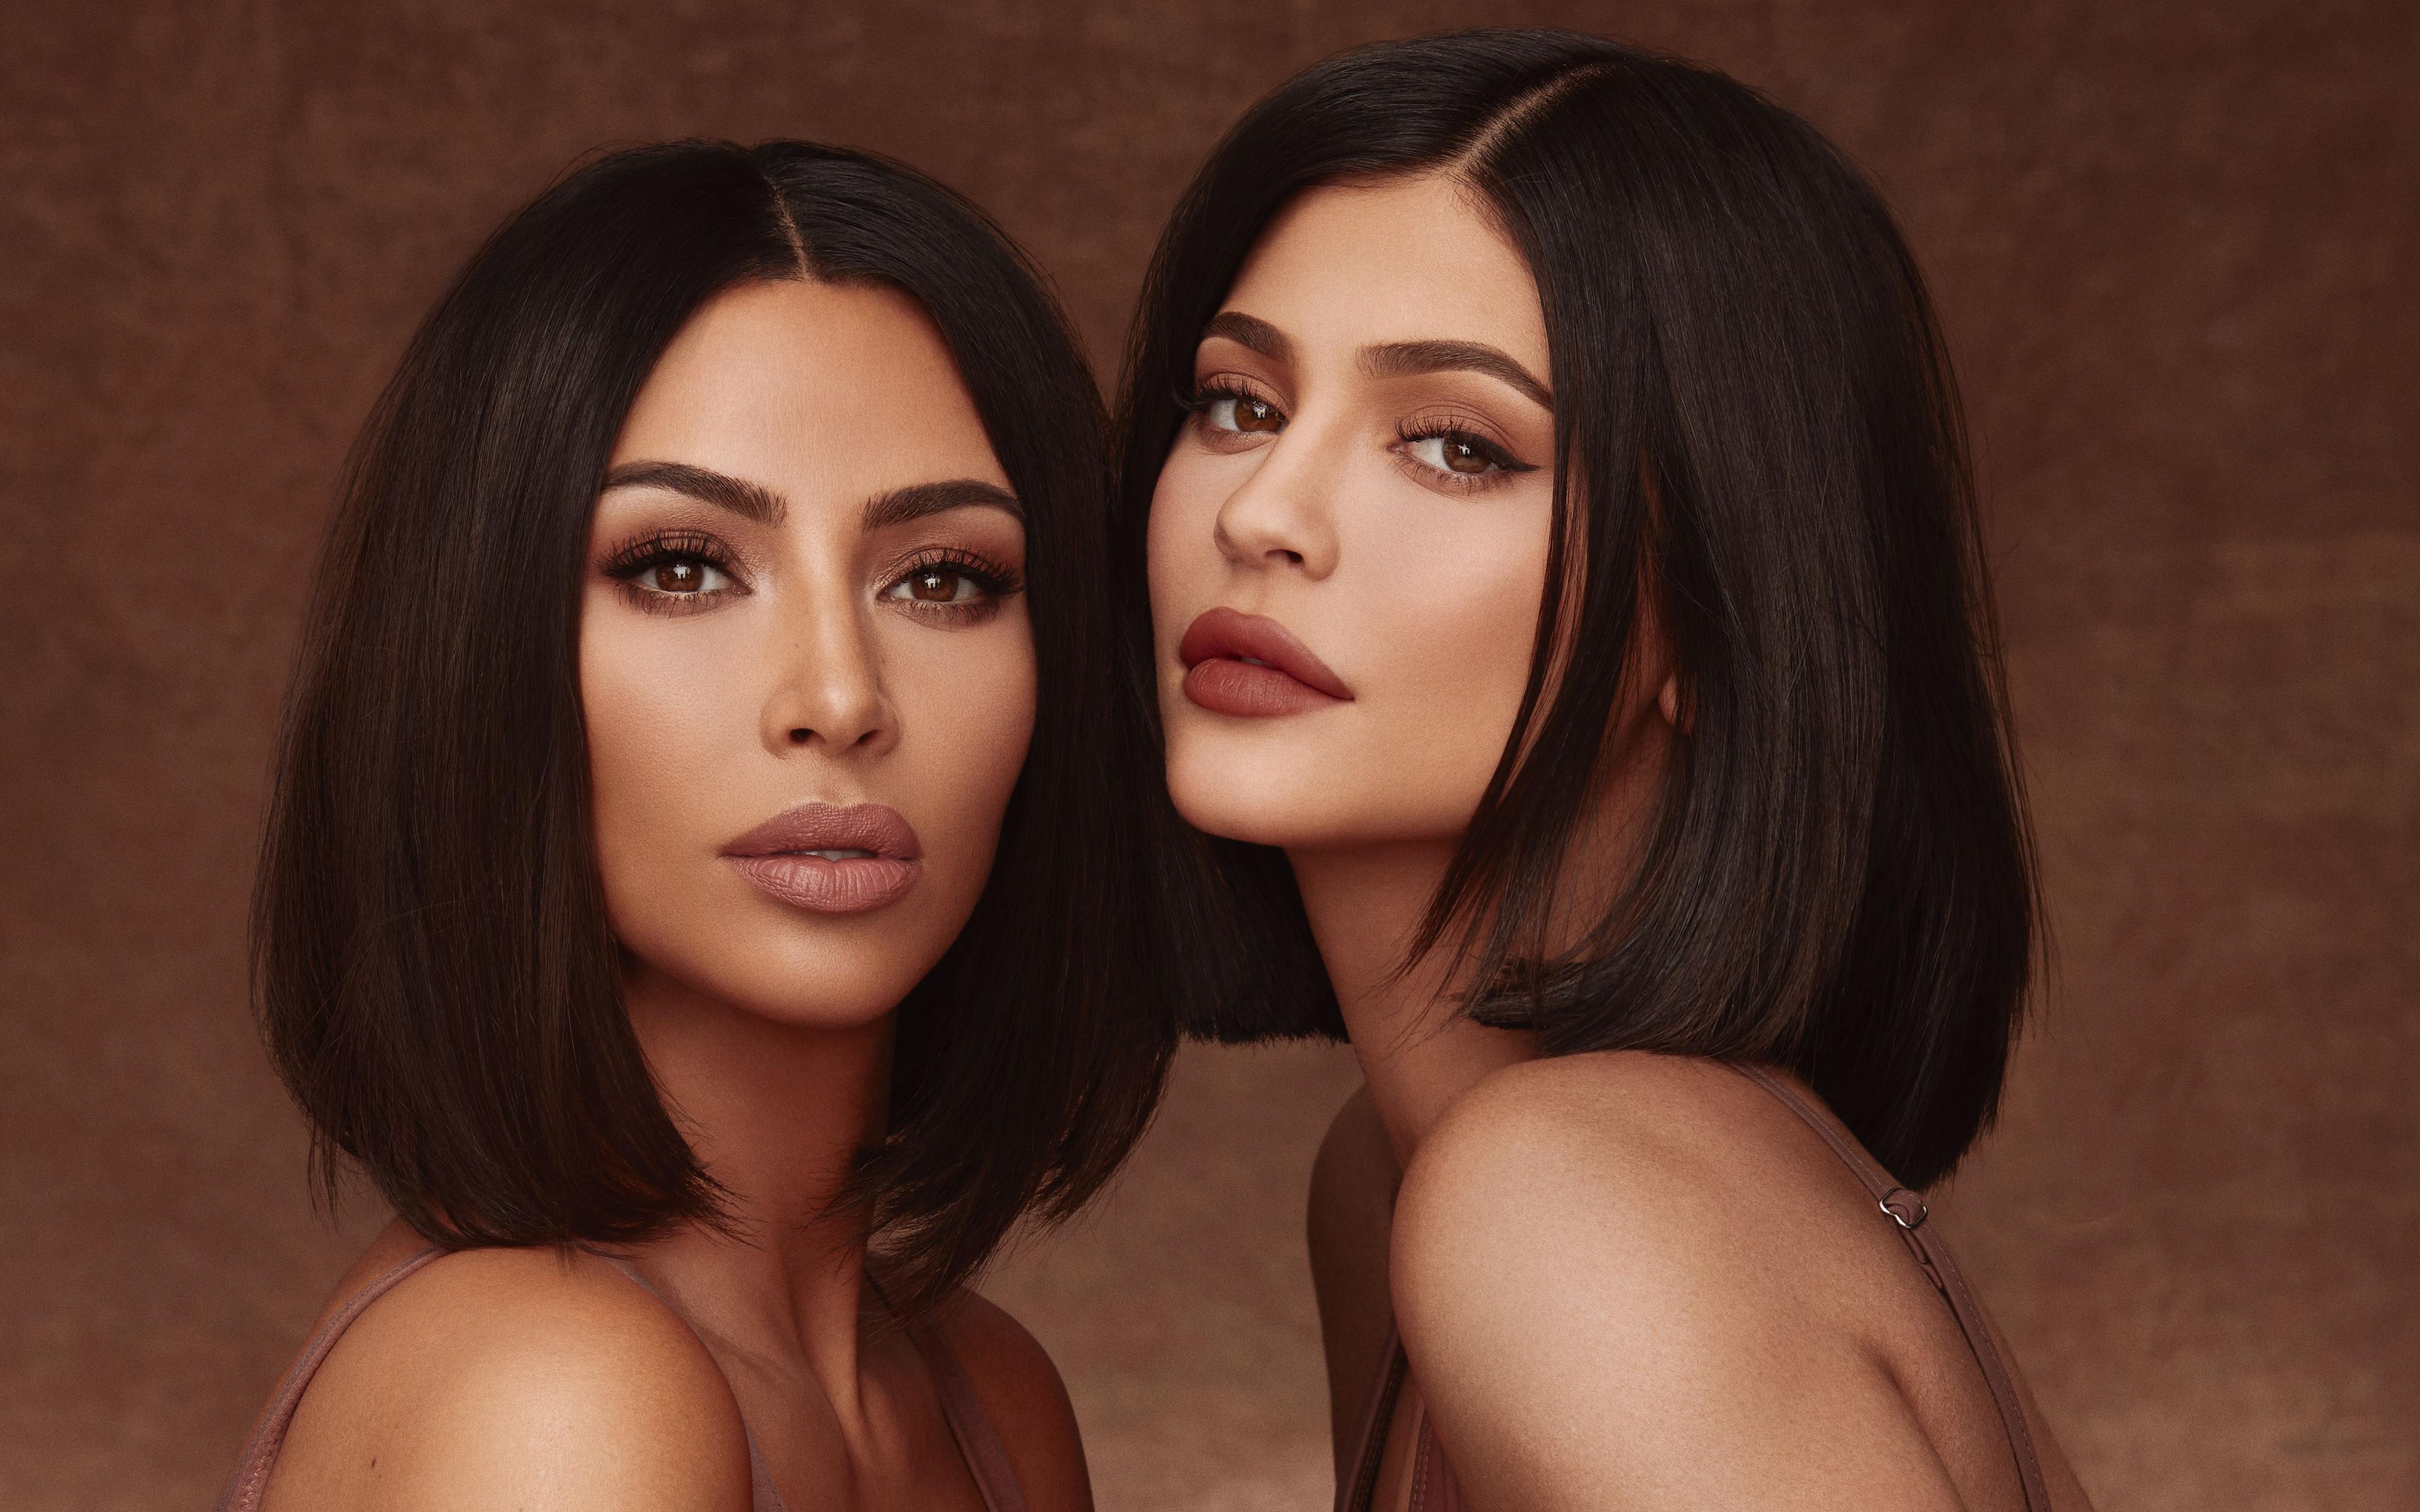 Download wallpaper 4k, Kim Kardashian, Kylie Jenner, 2019